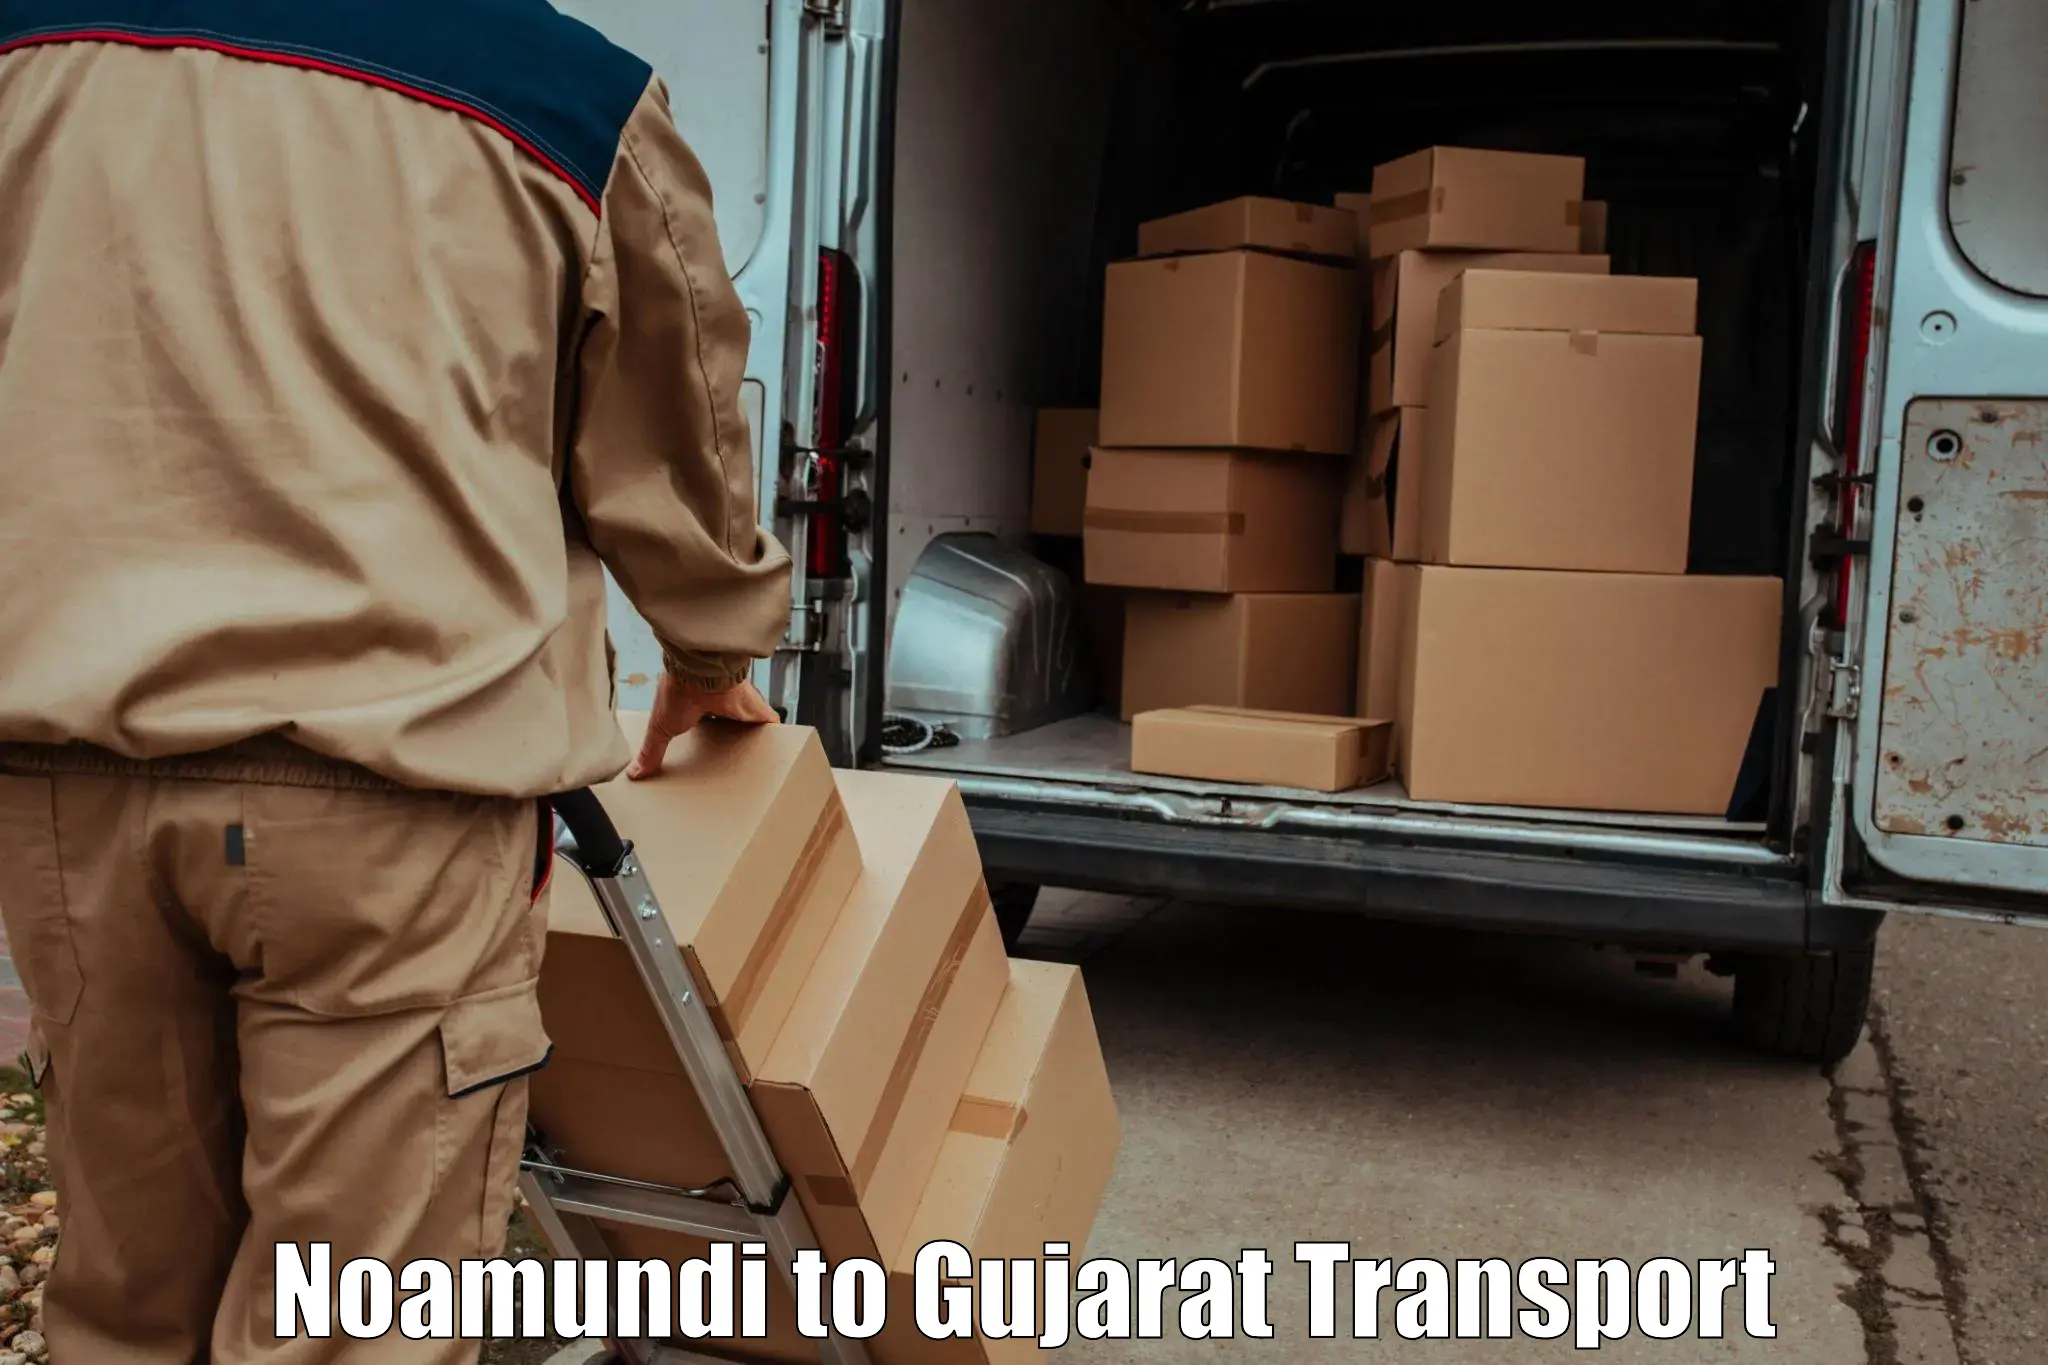 Furniture transport service Noamundi to Patan Gujarat